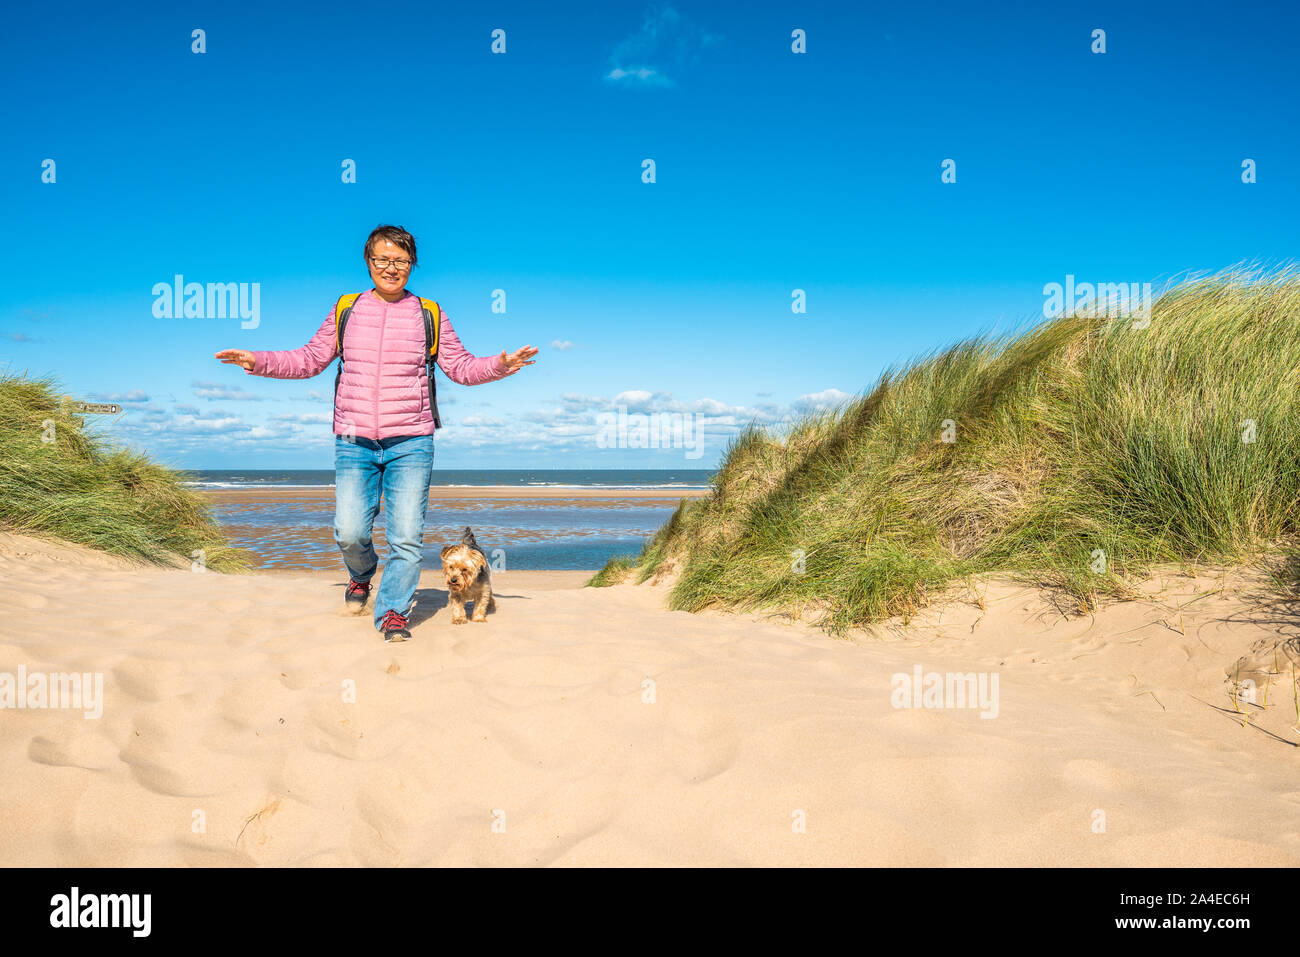 Femme sud-coréenne avec chien sur des dunes de sable où Norfolk Coast PATH National Trail de Burnham Overy Staithe atteint la mer, East Anglia, Angleterre, Royaume-Uni Banque D'Images